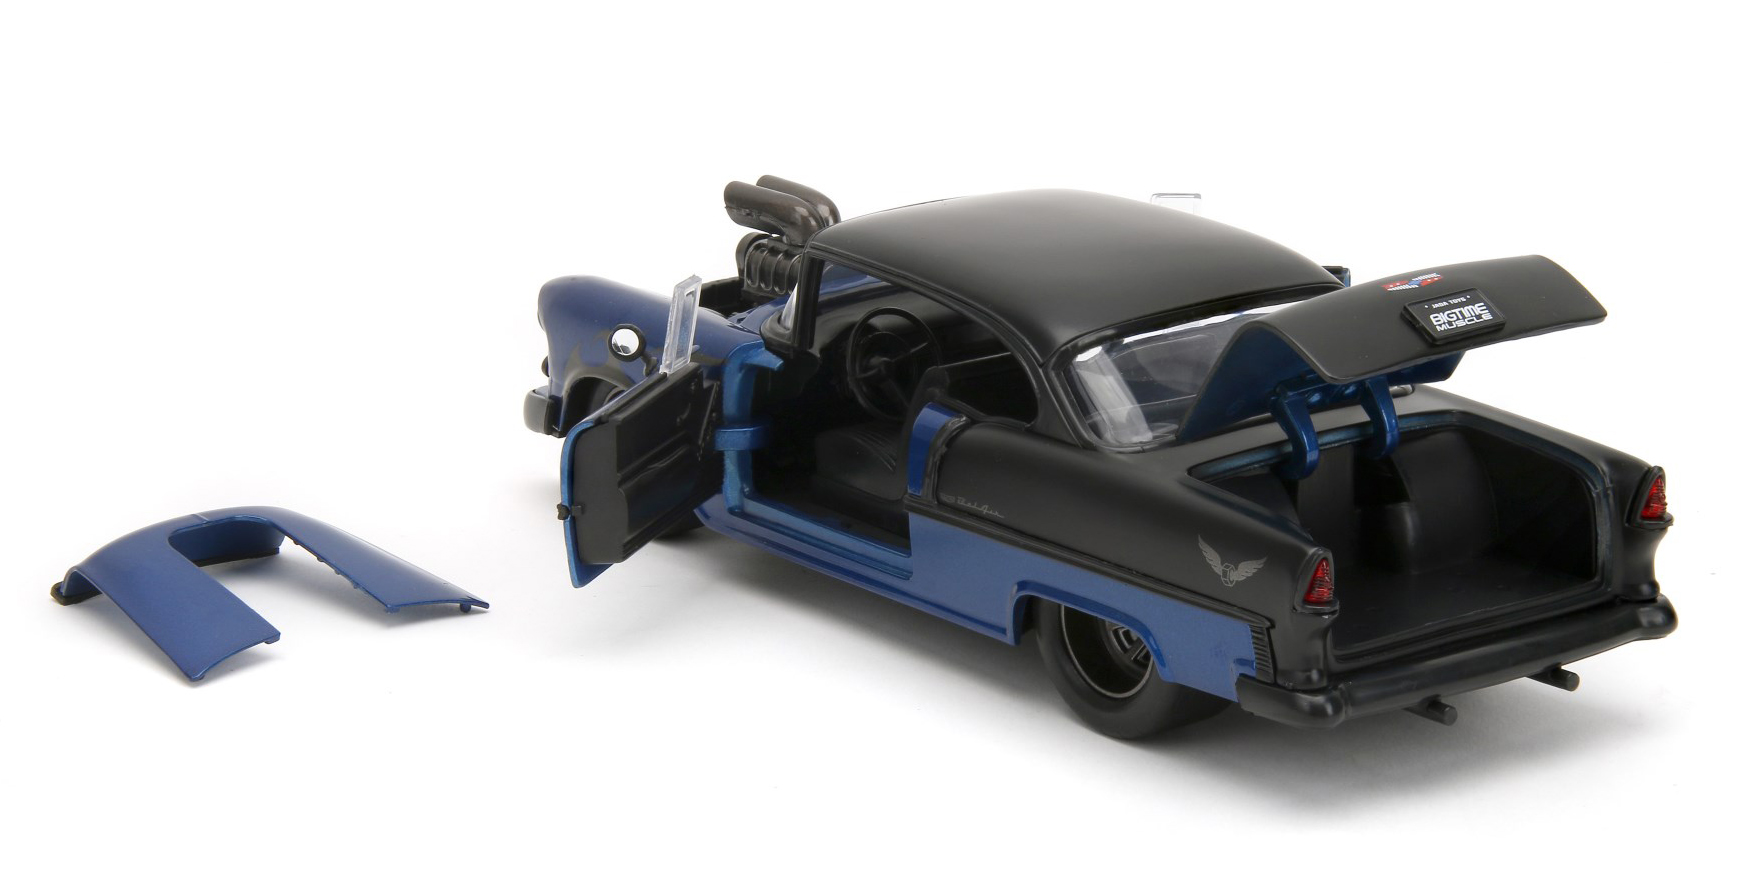 Modell eines Chevy Bel Air aus dem Jahre 1955. Das Coupe ist in dunkelblau / schwarz lackiert und hat seitlich Flammenzeichen die am Vorderrad angehen und zur Tre hin zulaufen. Die Motorhaube ist mit einem riesigen Luftansaugstutzen versehen. Die Motorhaube lsst sich zum Zeigen des Big Blocks abnehmen.  Dach, Kofferraumdeckel und die hintere Hlft sind, ebenso wie die sonst blichen Chromringe um die Scheinwerfer und Chromstostangen, in Mattschwarz gehalten. Die Felgen sind in dunkelgrau lackiert. Kofferraum und Tren lassen sich am Modell ffnen. 